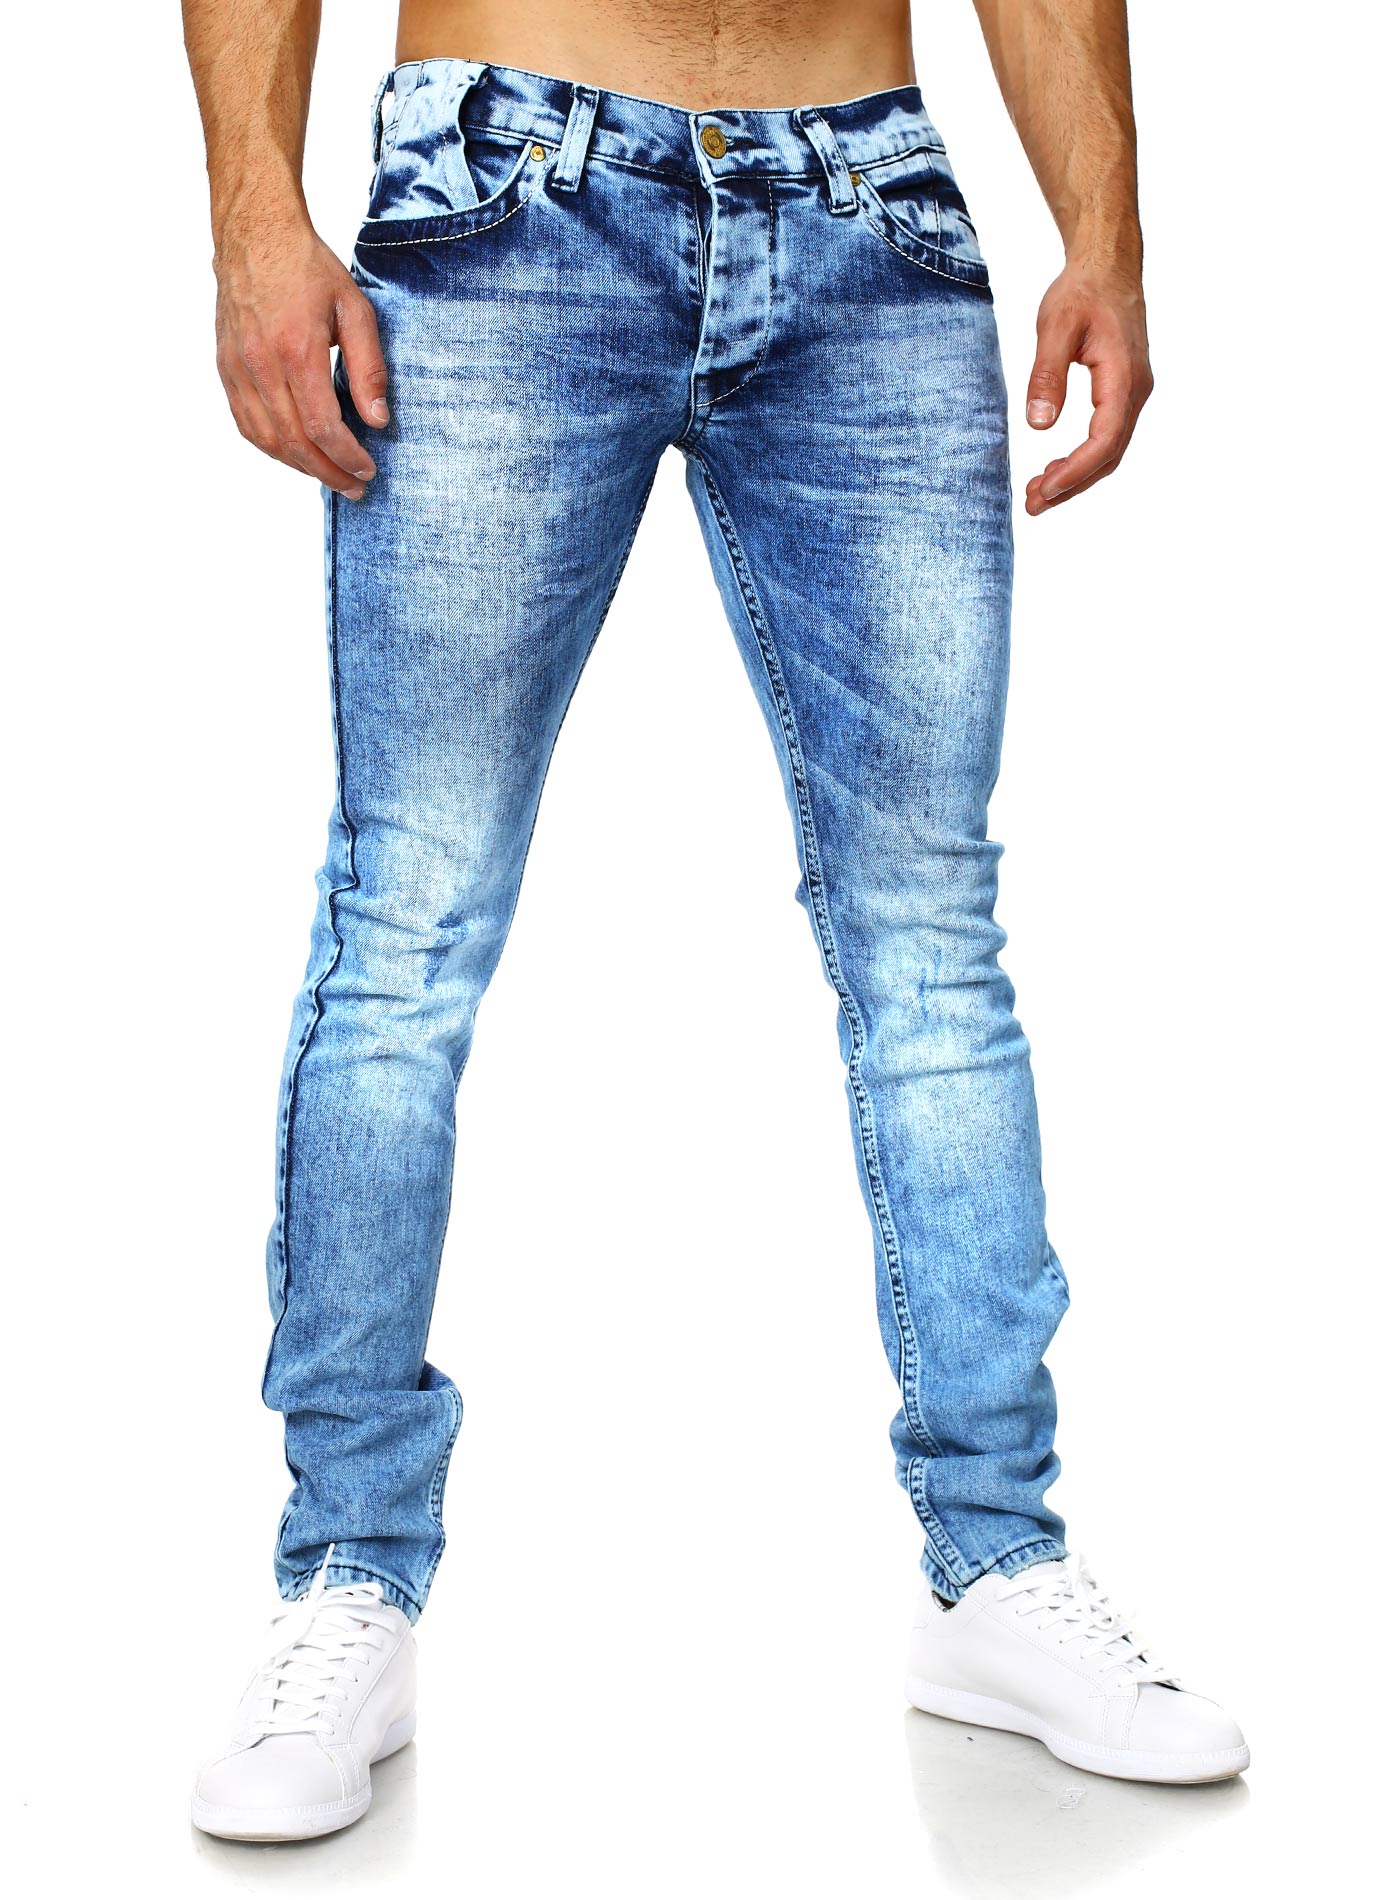 Мужской образ в джинсах